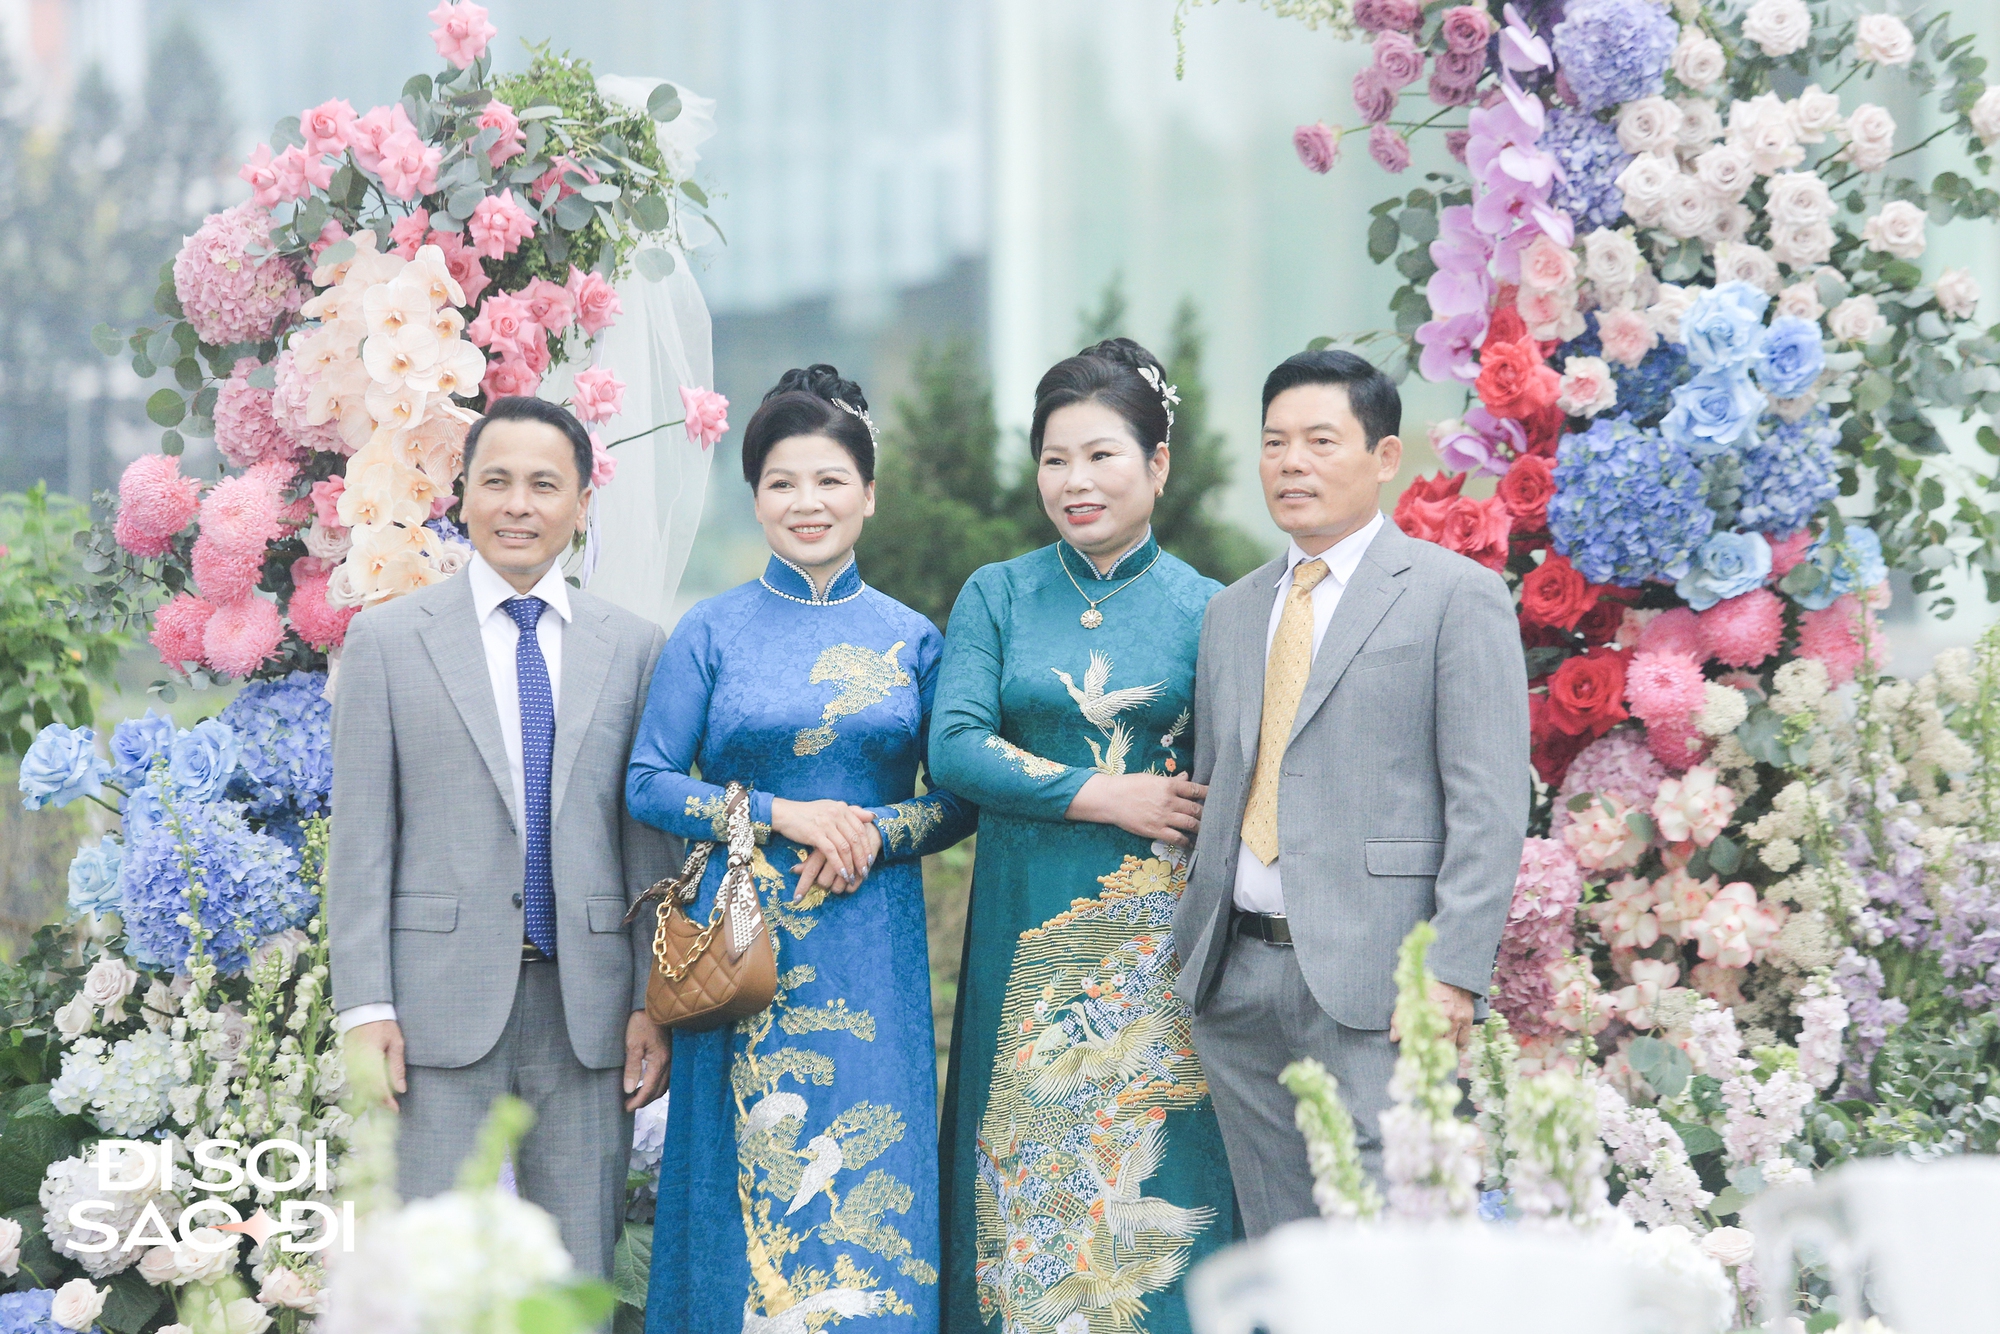 Mẹ bầu Doãn Hải My đọ sắc cùng ái nữ nhà đại gia Minh Nhựa ở đám cưới Quang Hải: Gấp đôi visual là đây - Ảnh 6.